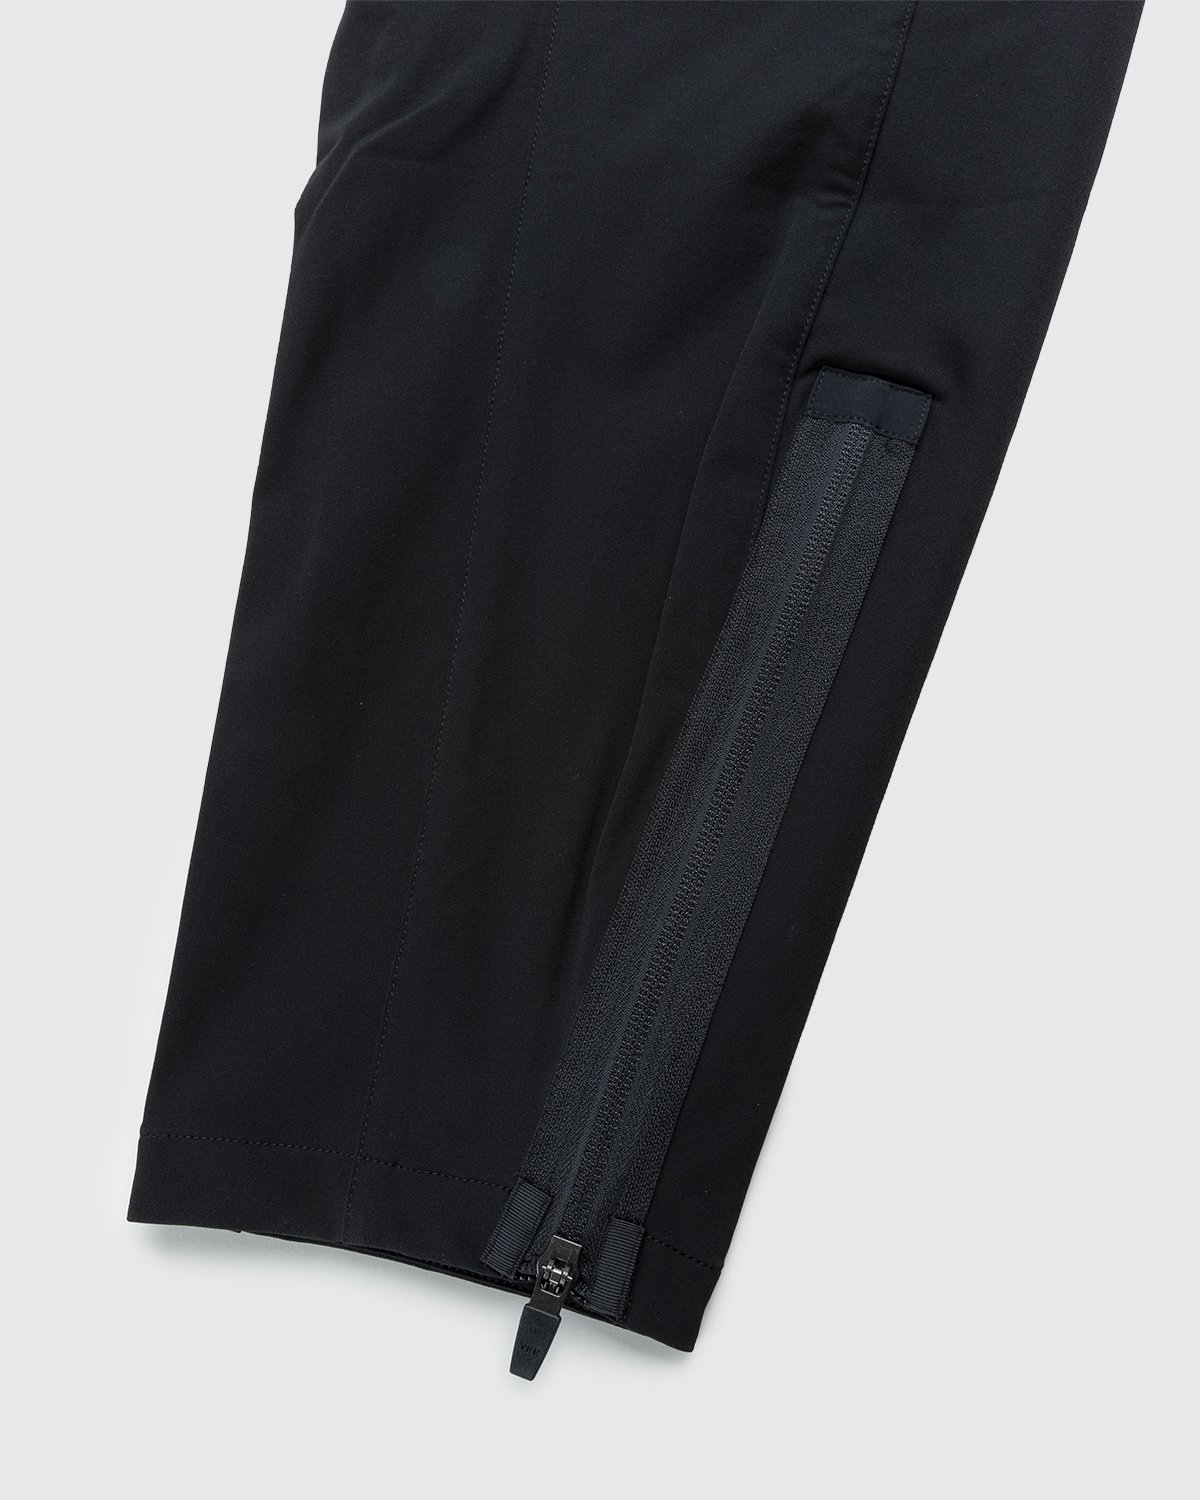 ACRONYM - P41-DS Pant Black - Clothing - Black - Image 6